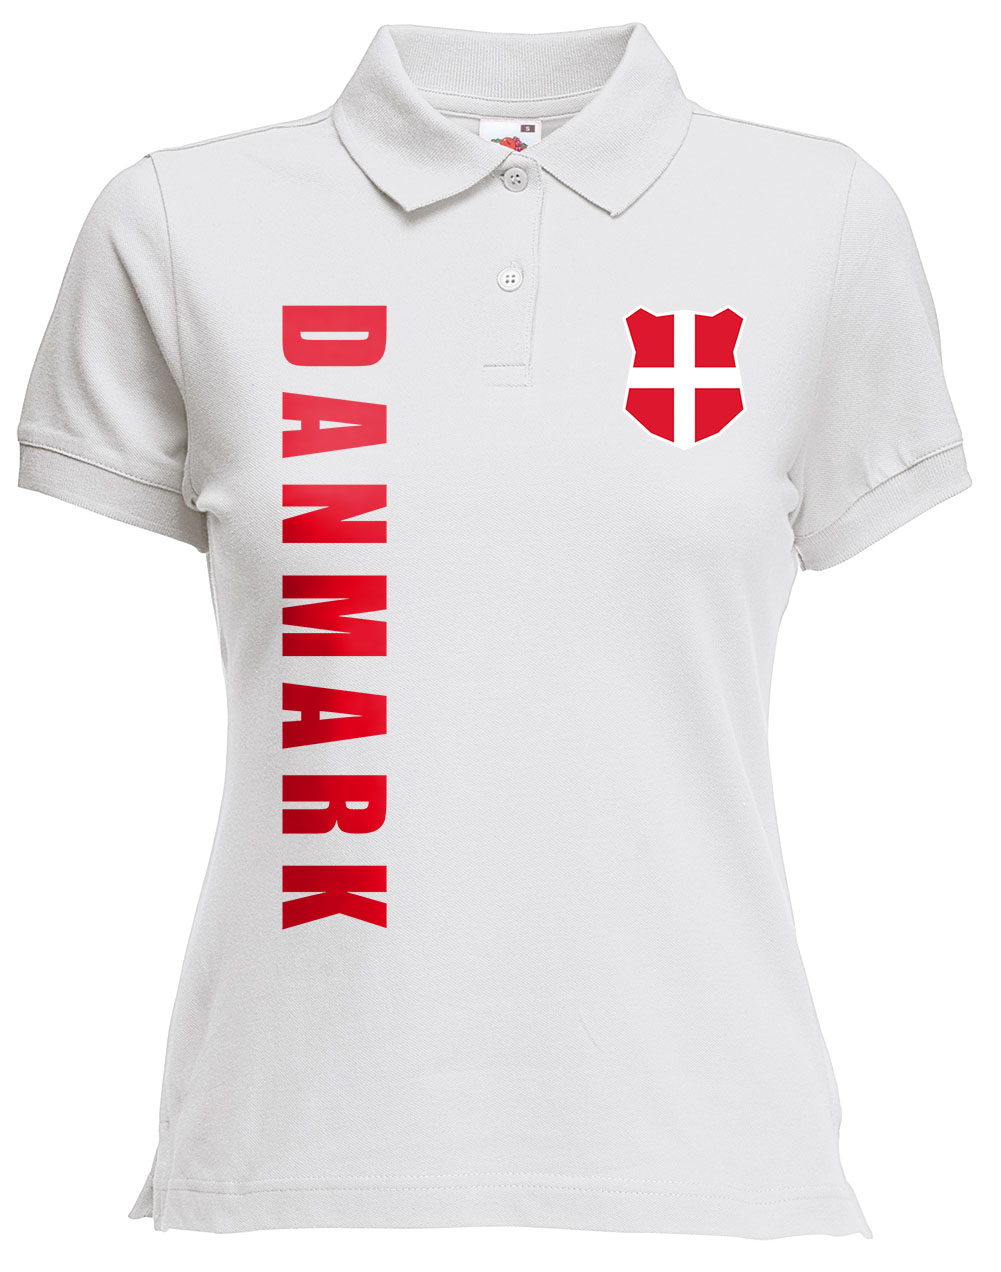 Dänemark Danmark Damen Trikot Fanshirt Top Shirt WM 2018 Name Nummer 